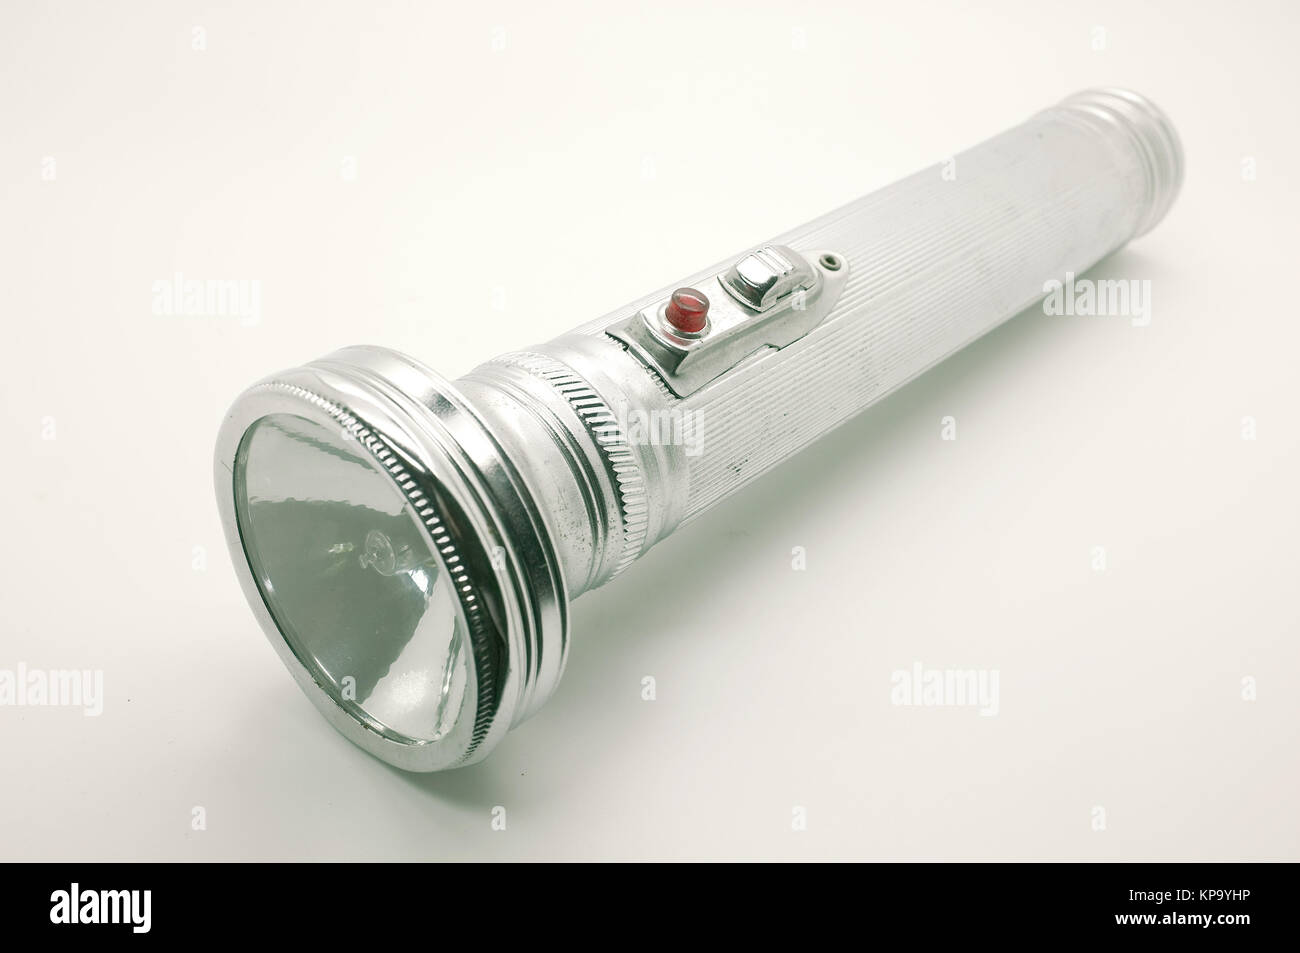 Vieille lampe torche métal, argent Photo Stock - Alamy